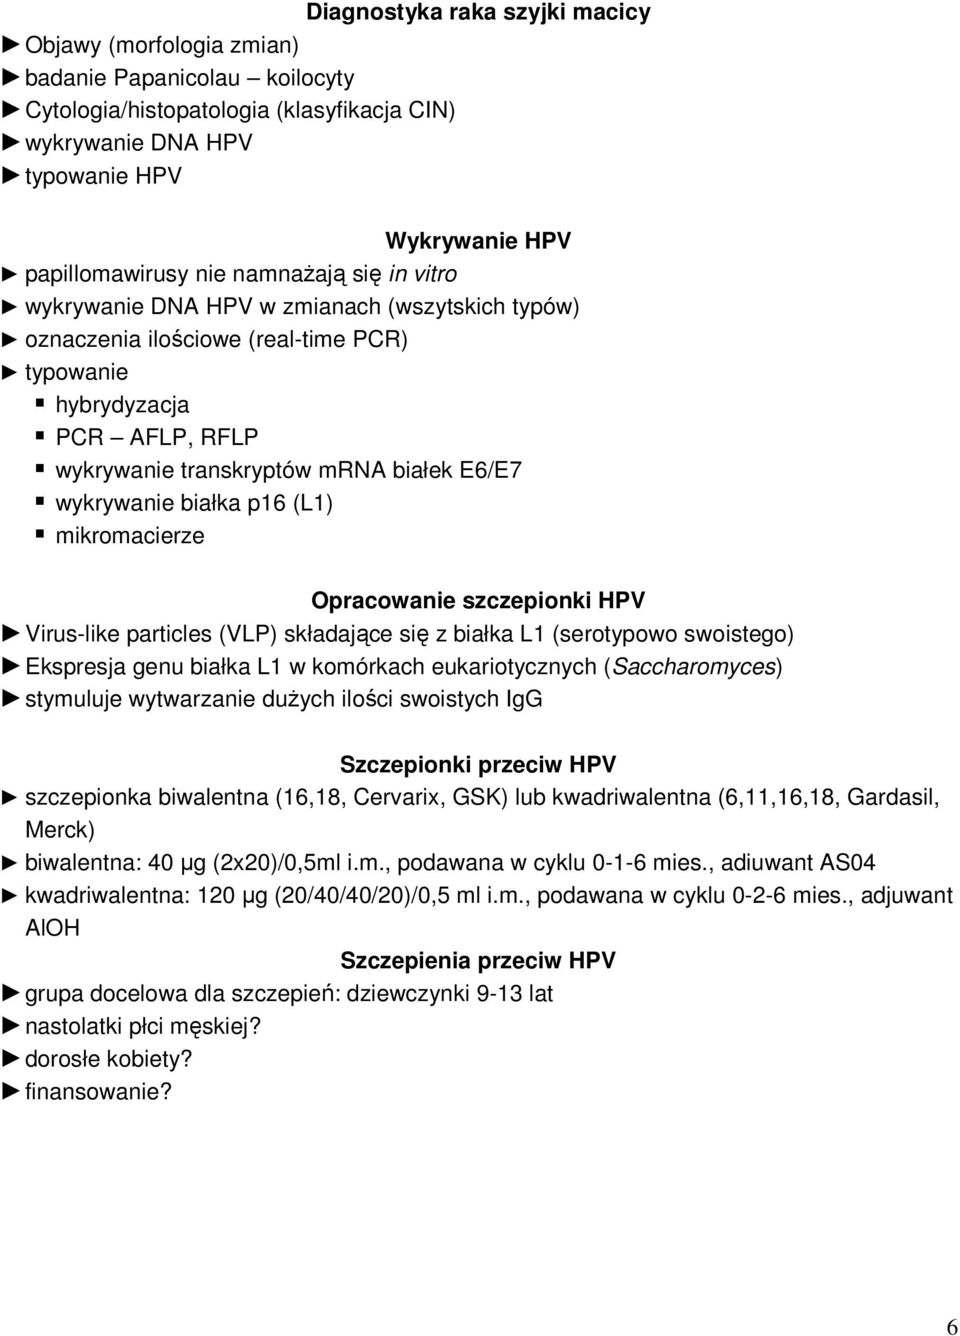 białka p16 (L1) mikromacierze Opracowanie szczepionki HPV Virus-like particles (VLP) składające się z białka L1 (serotypowo swoistego) Ekspresja genu białka L1 w komórkach eukariotycznych